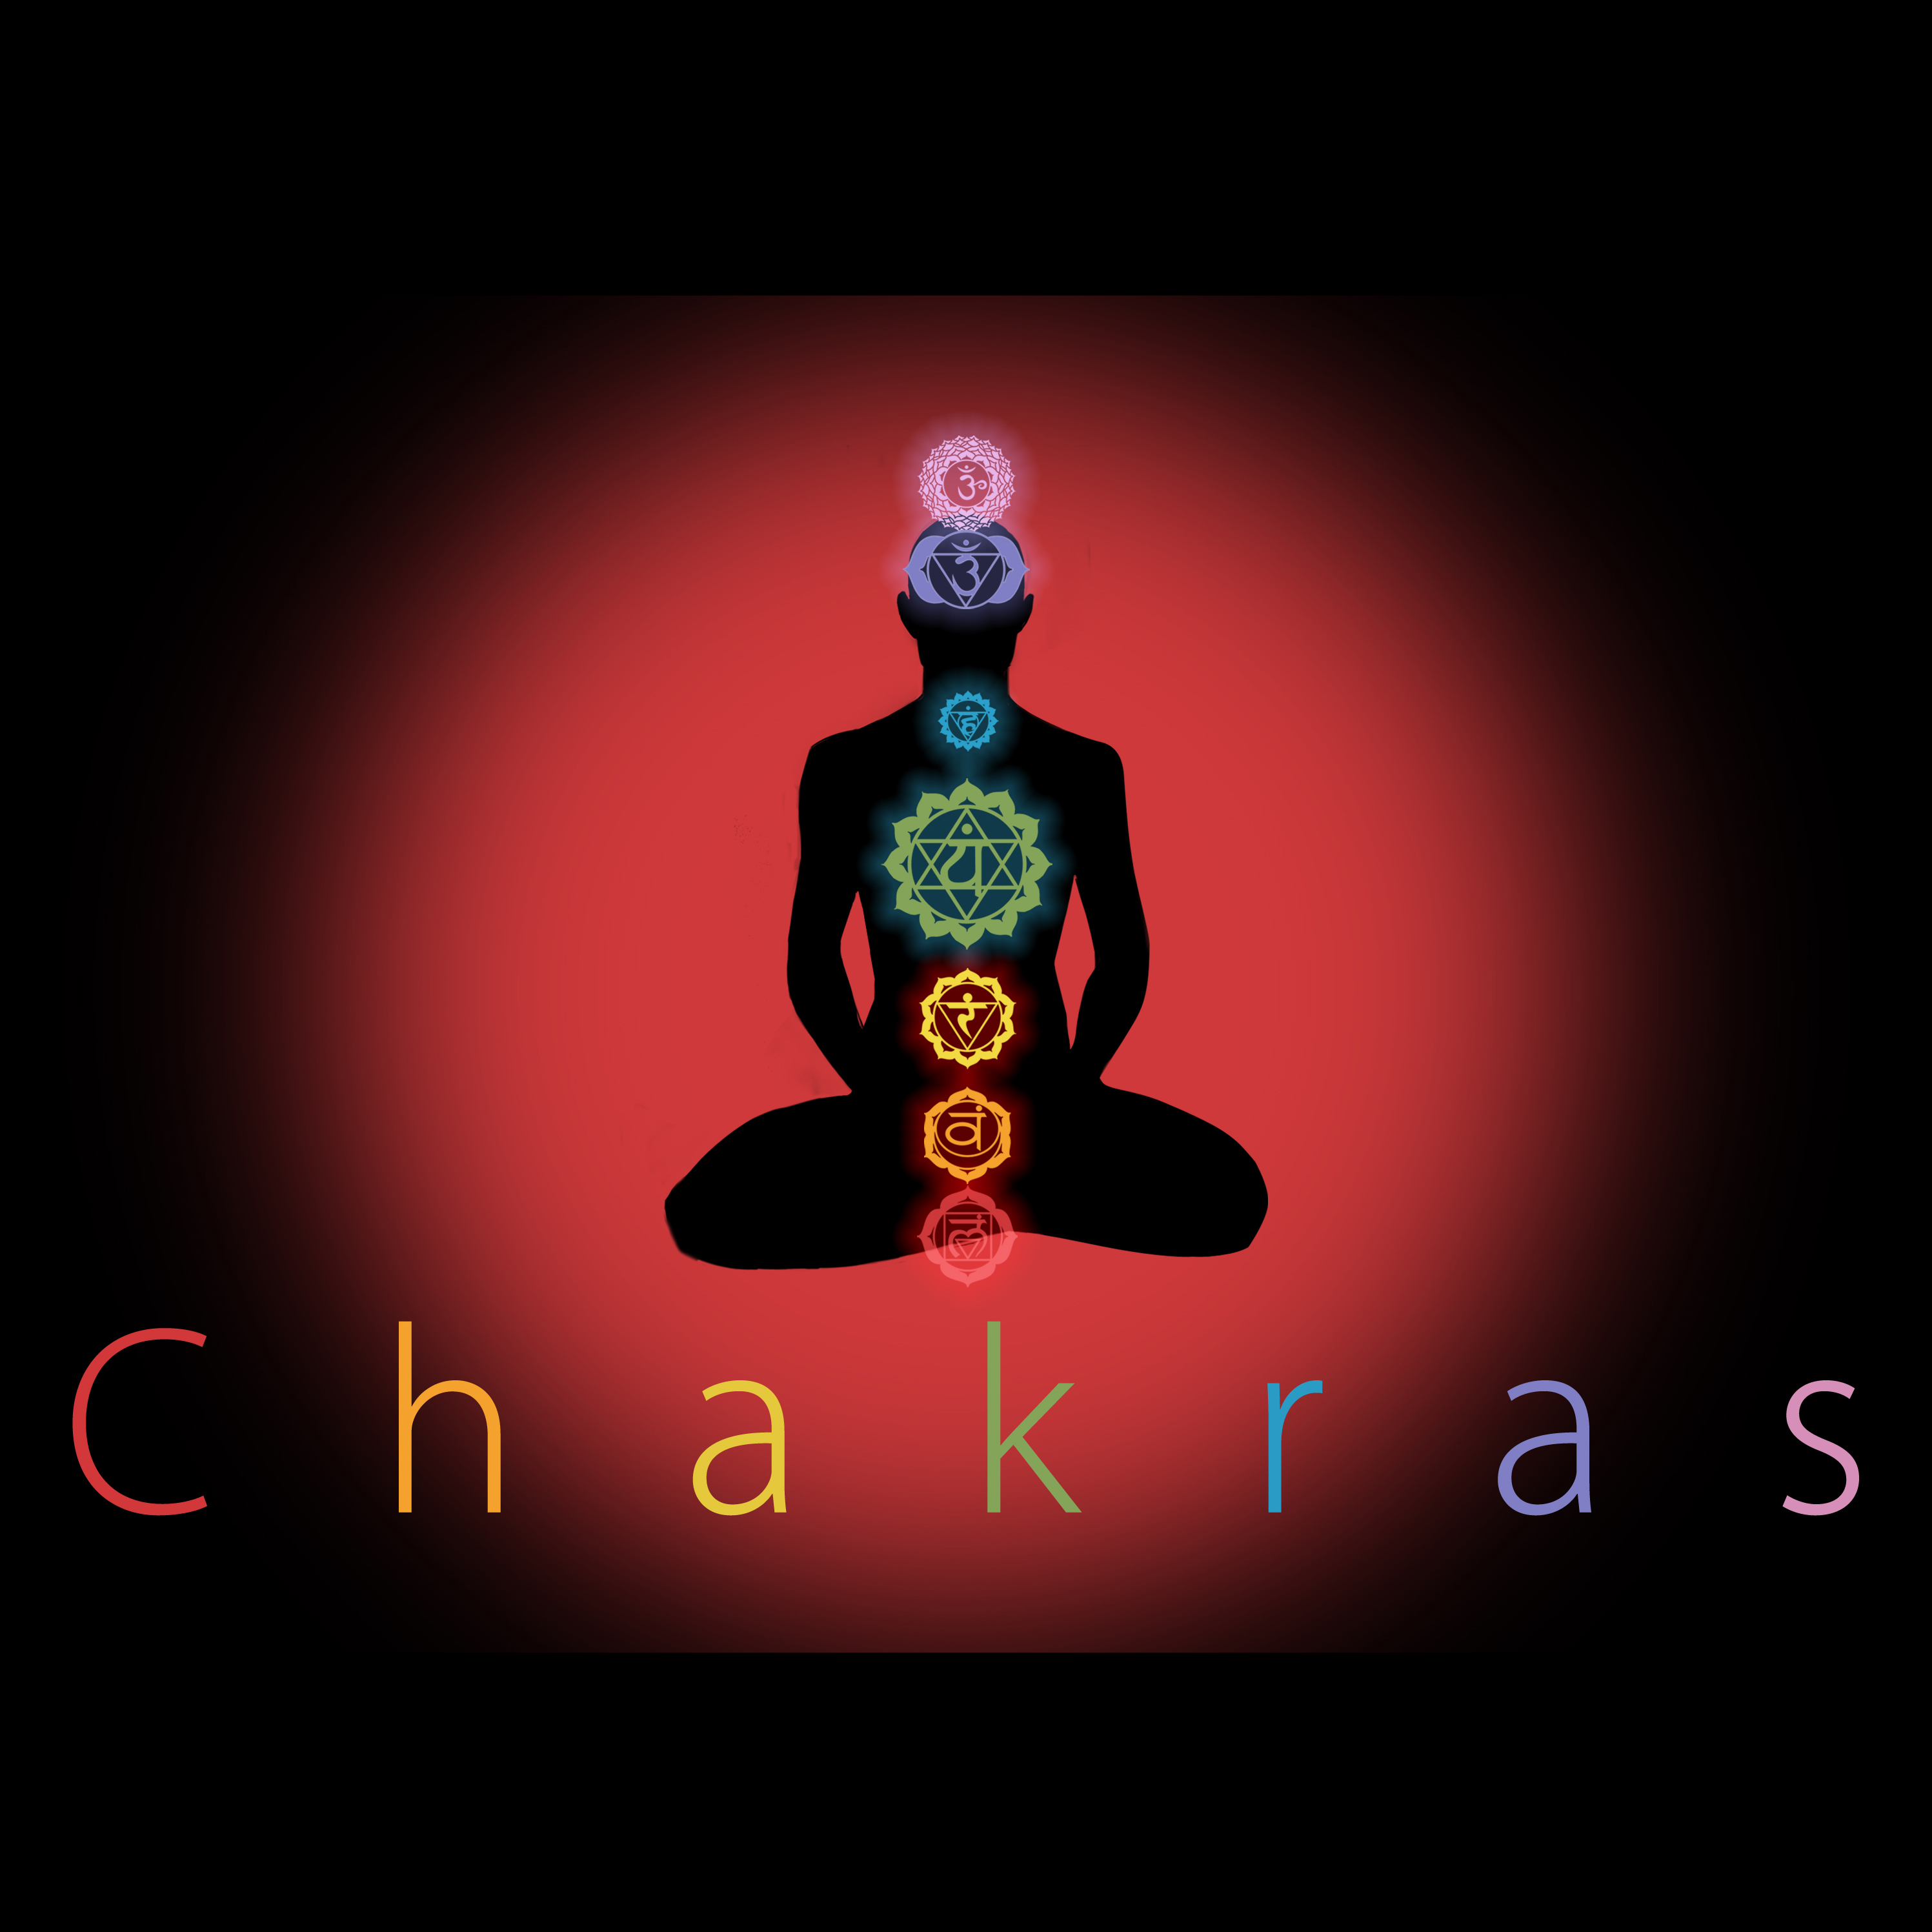 Video – Social Media Short: Chakras